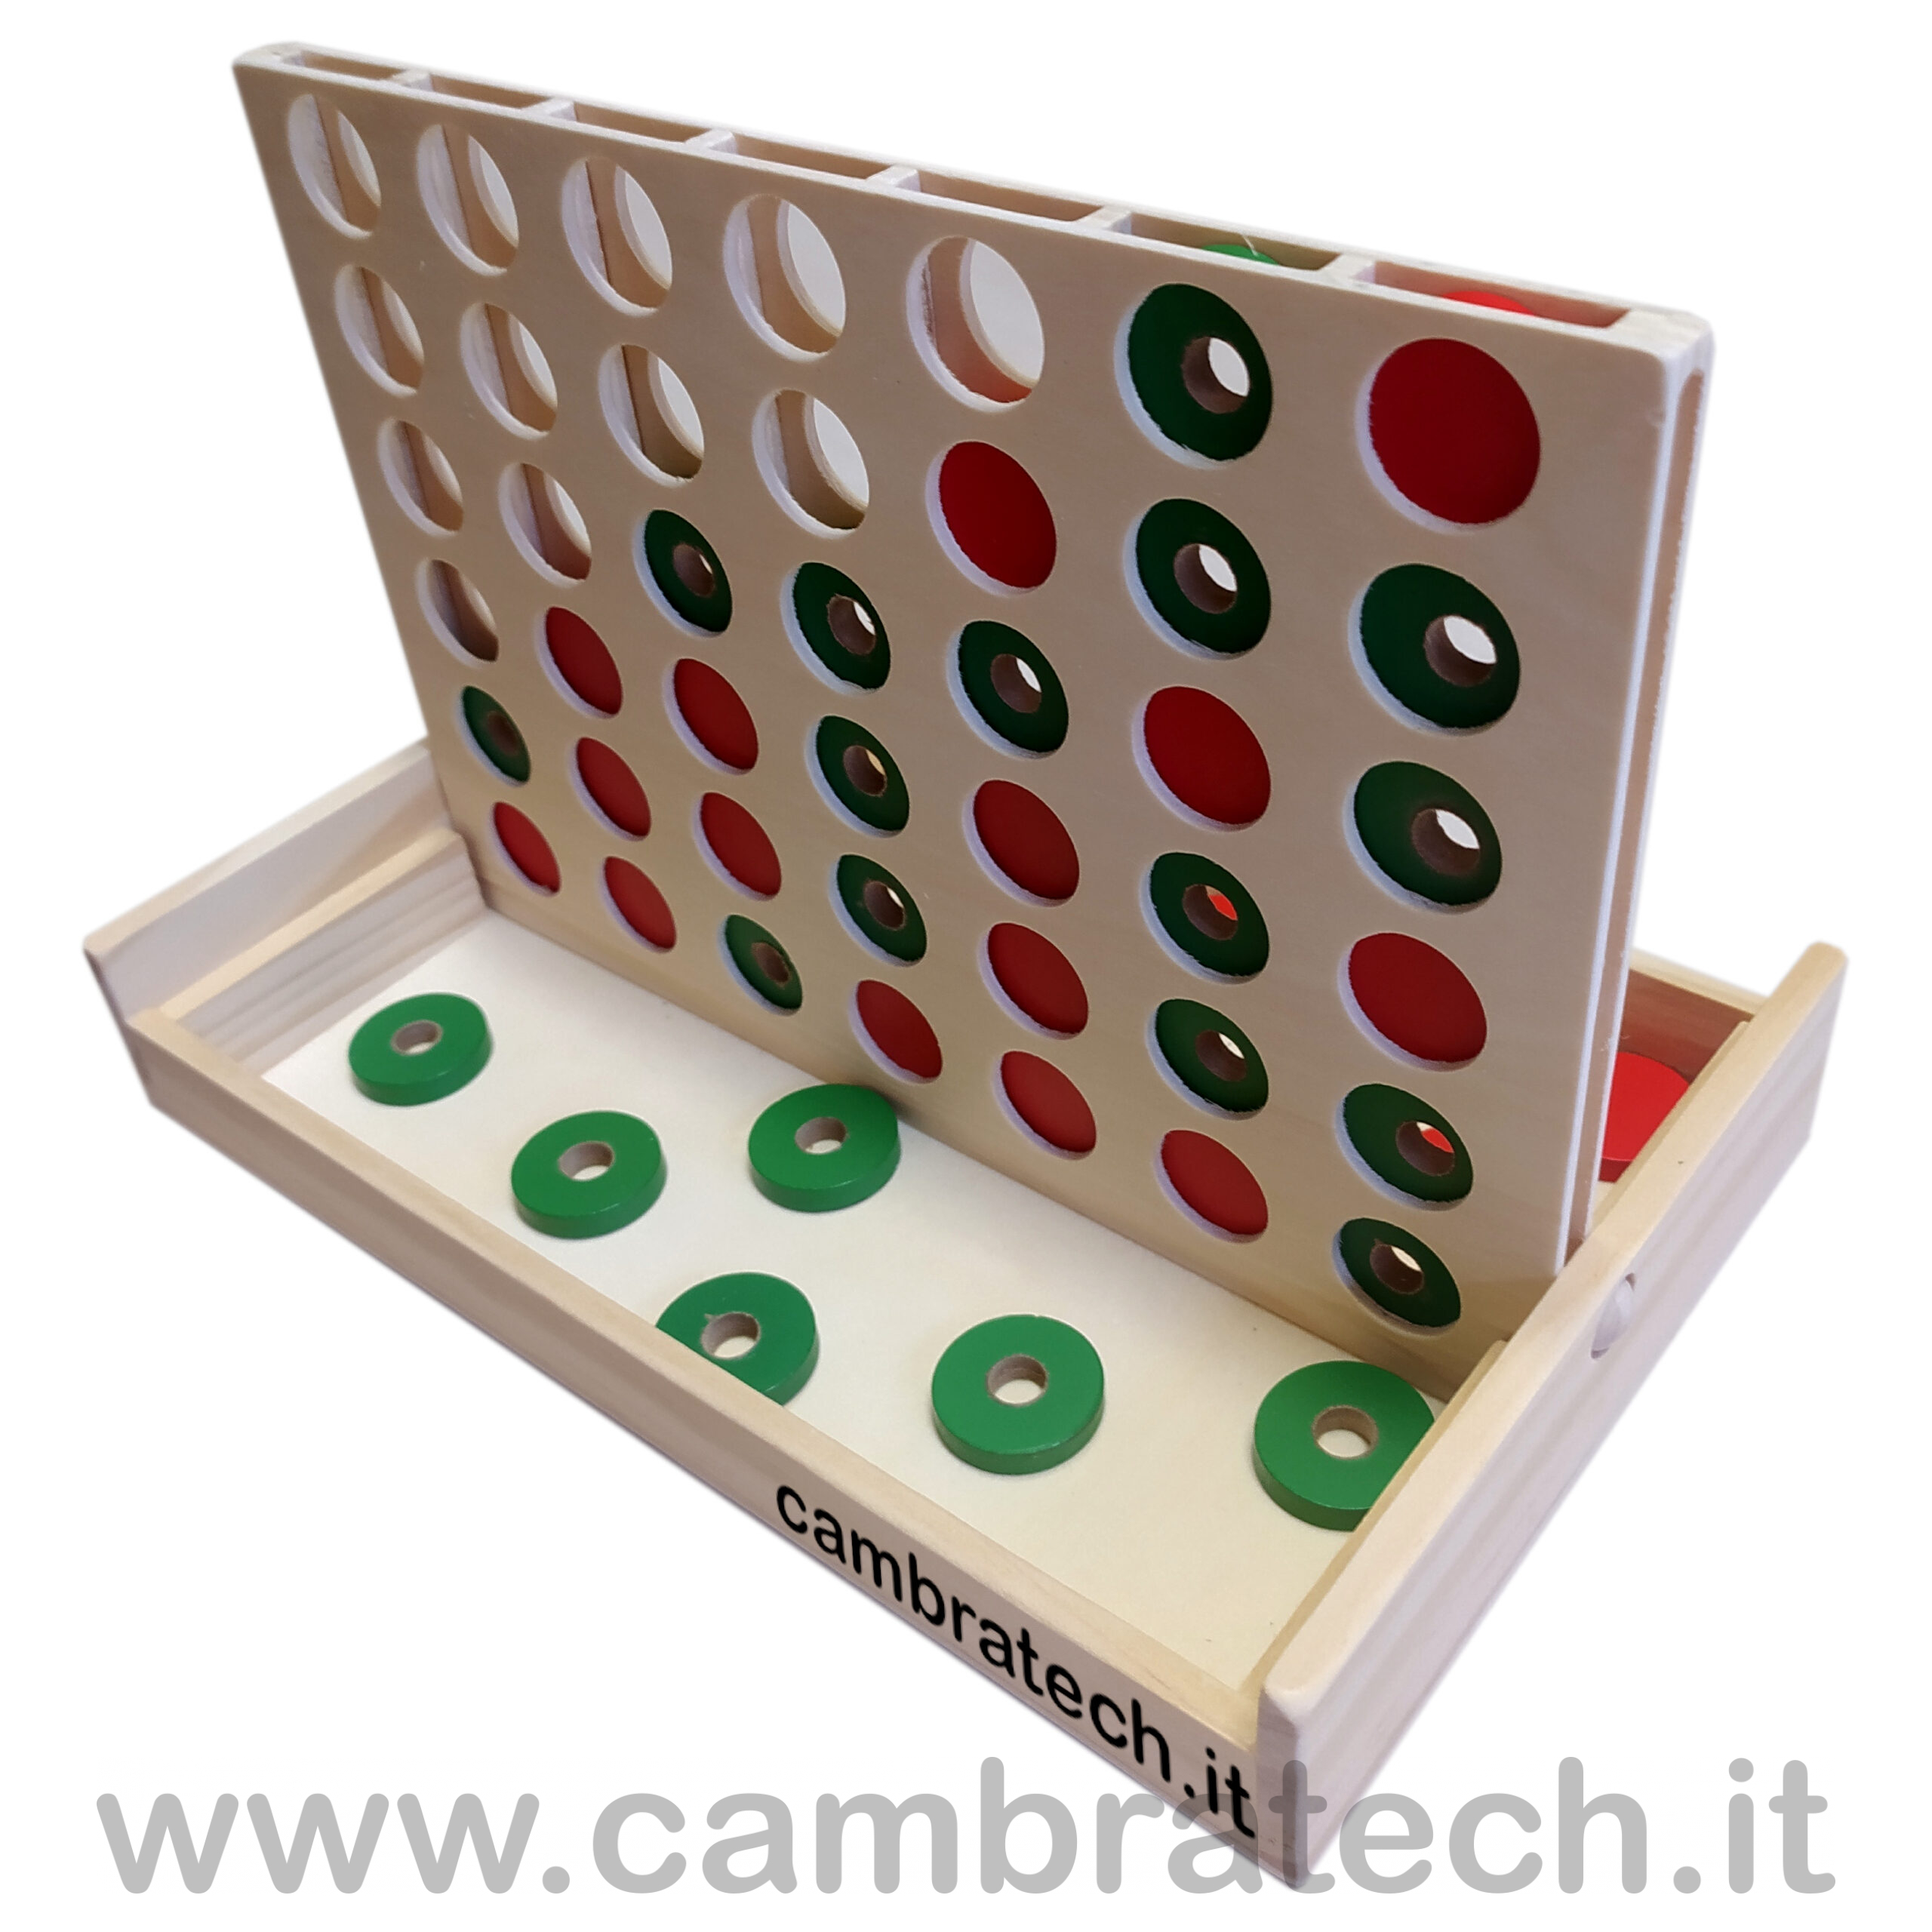 Forza 4 gioco da tavolo tattile - Cambratech - Articoli per ciechi ed  ipovedenti